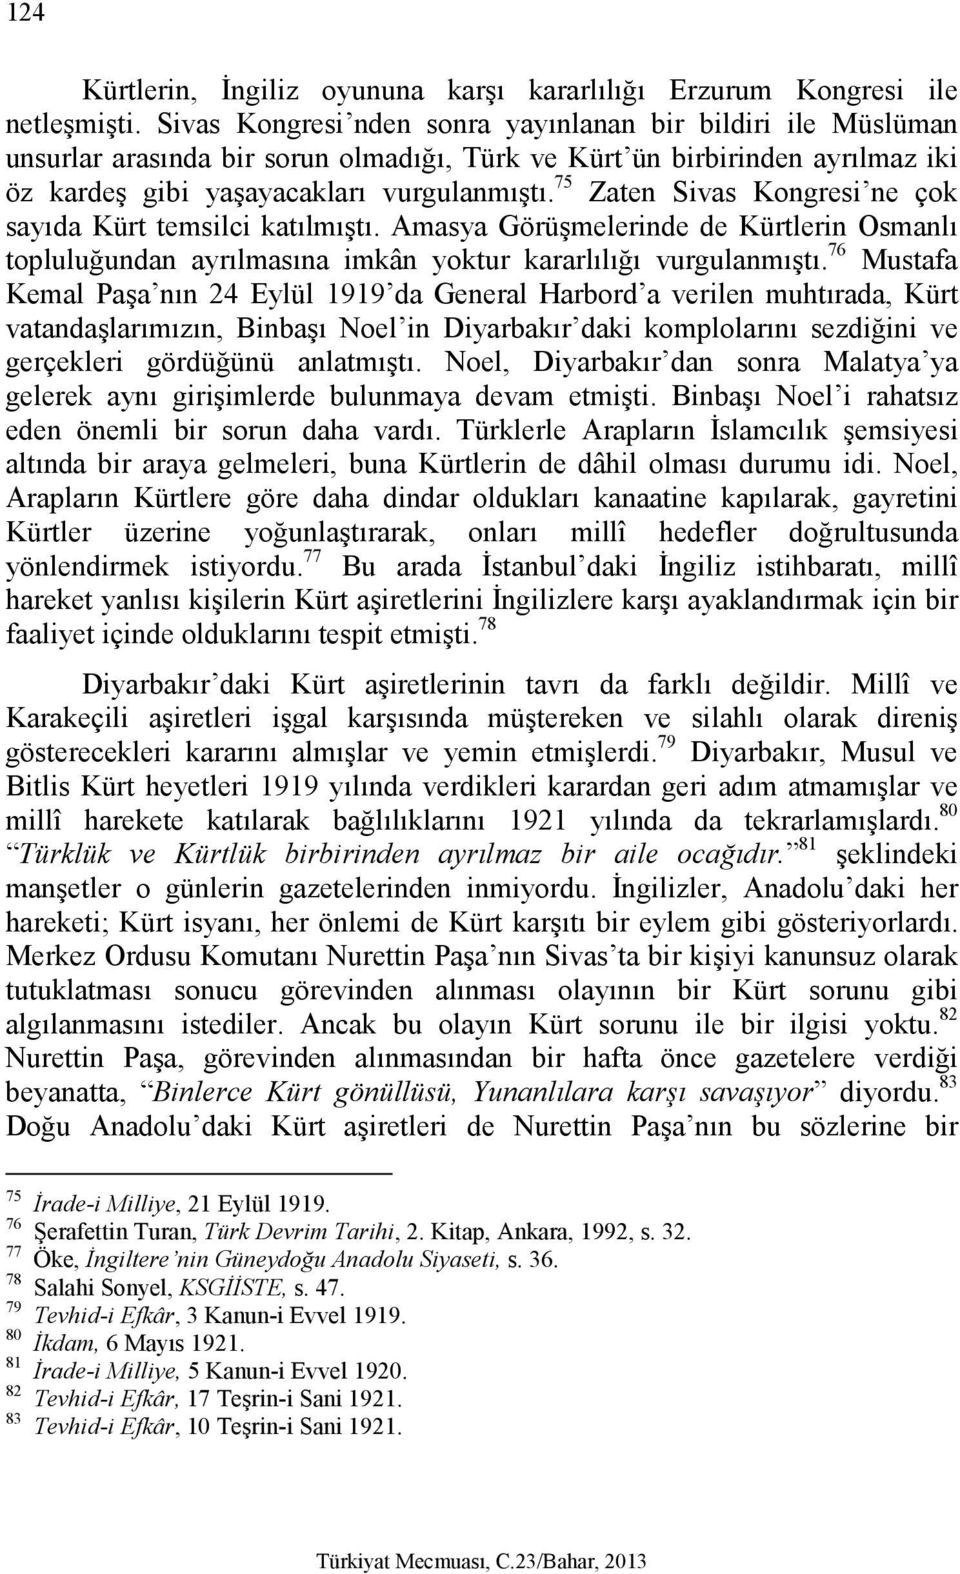 75 Zaten Sivas Kongresi ne çok sayıda Kürt temsilci katılmıştı. Amasya Görüşmelerinde de Kürtlerin Osmanlı topluluğundan ayrılmasına imkân yoktur kararlılığı vurgulanmıştı.